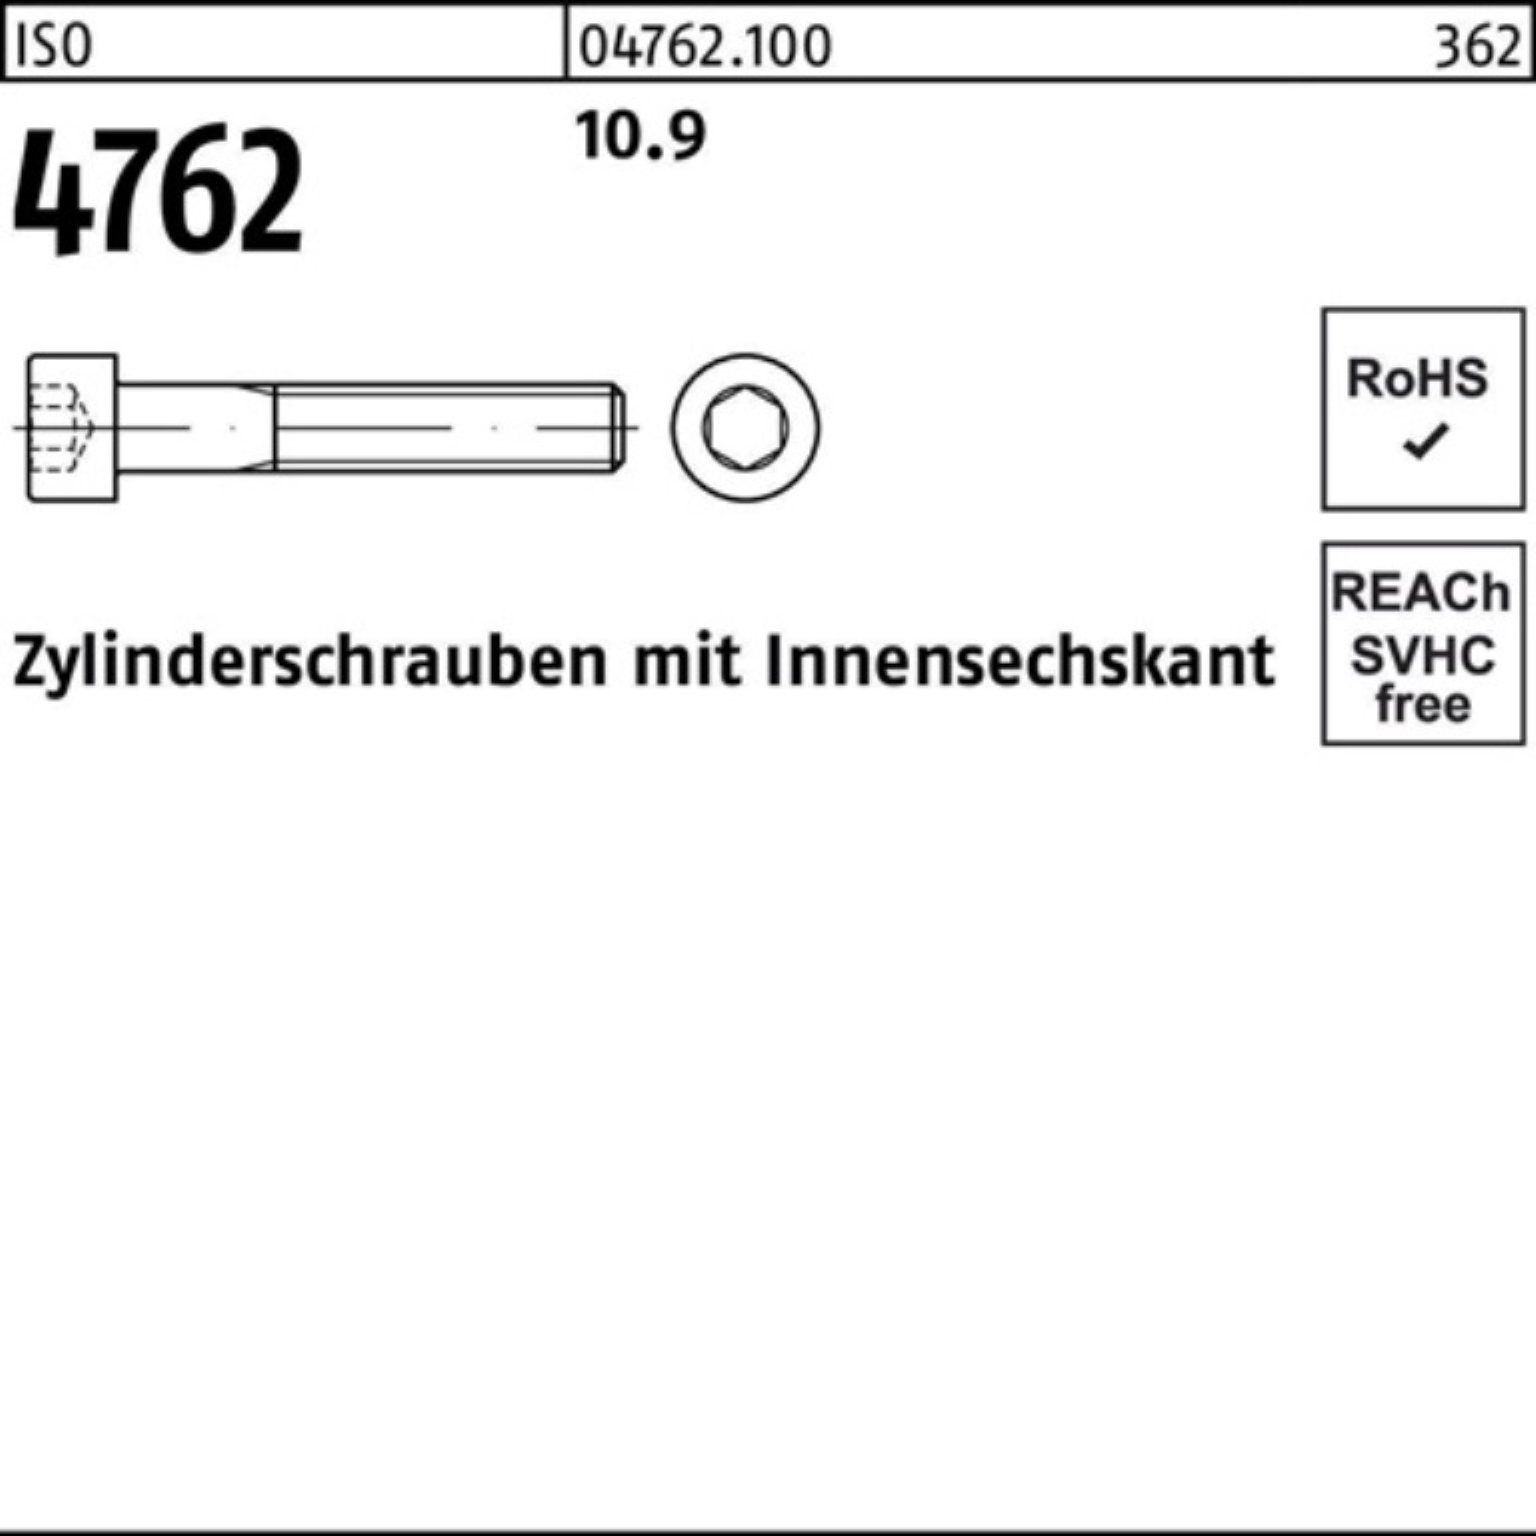 Reyher Zylinderschraube Innen-6kt 100er 4762 10.9 Zylinderschraube M10x Pack 75 100 Stück ISO